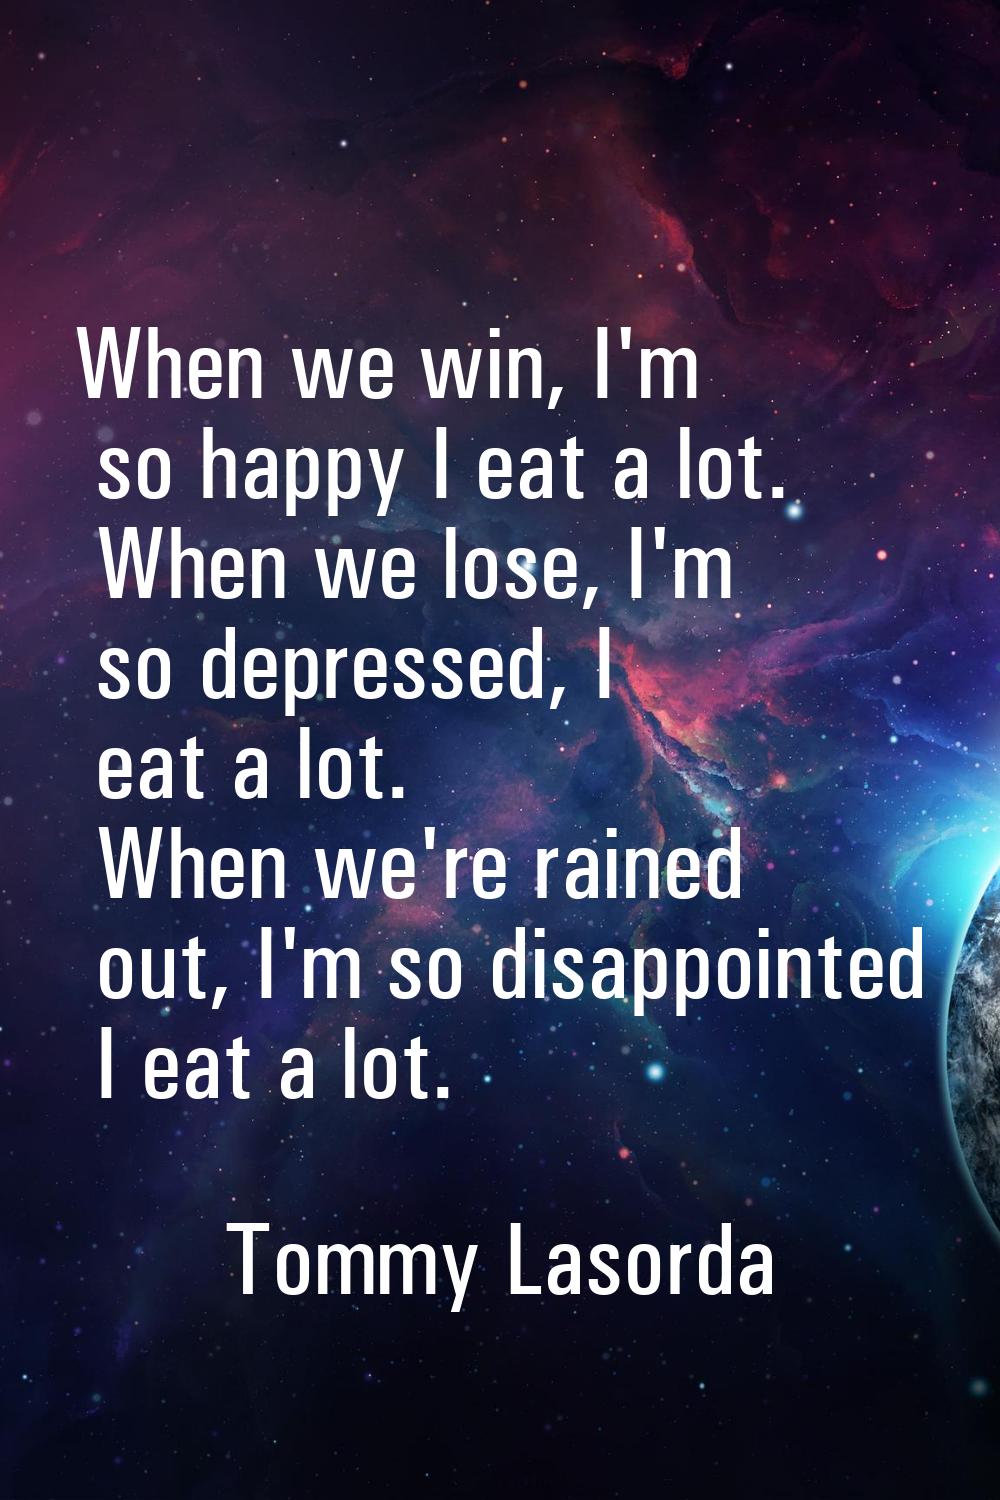 When we win, I'm so happy I eat a lot. When we lose, I'm so depressed, I eat a lot. When we're rain